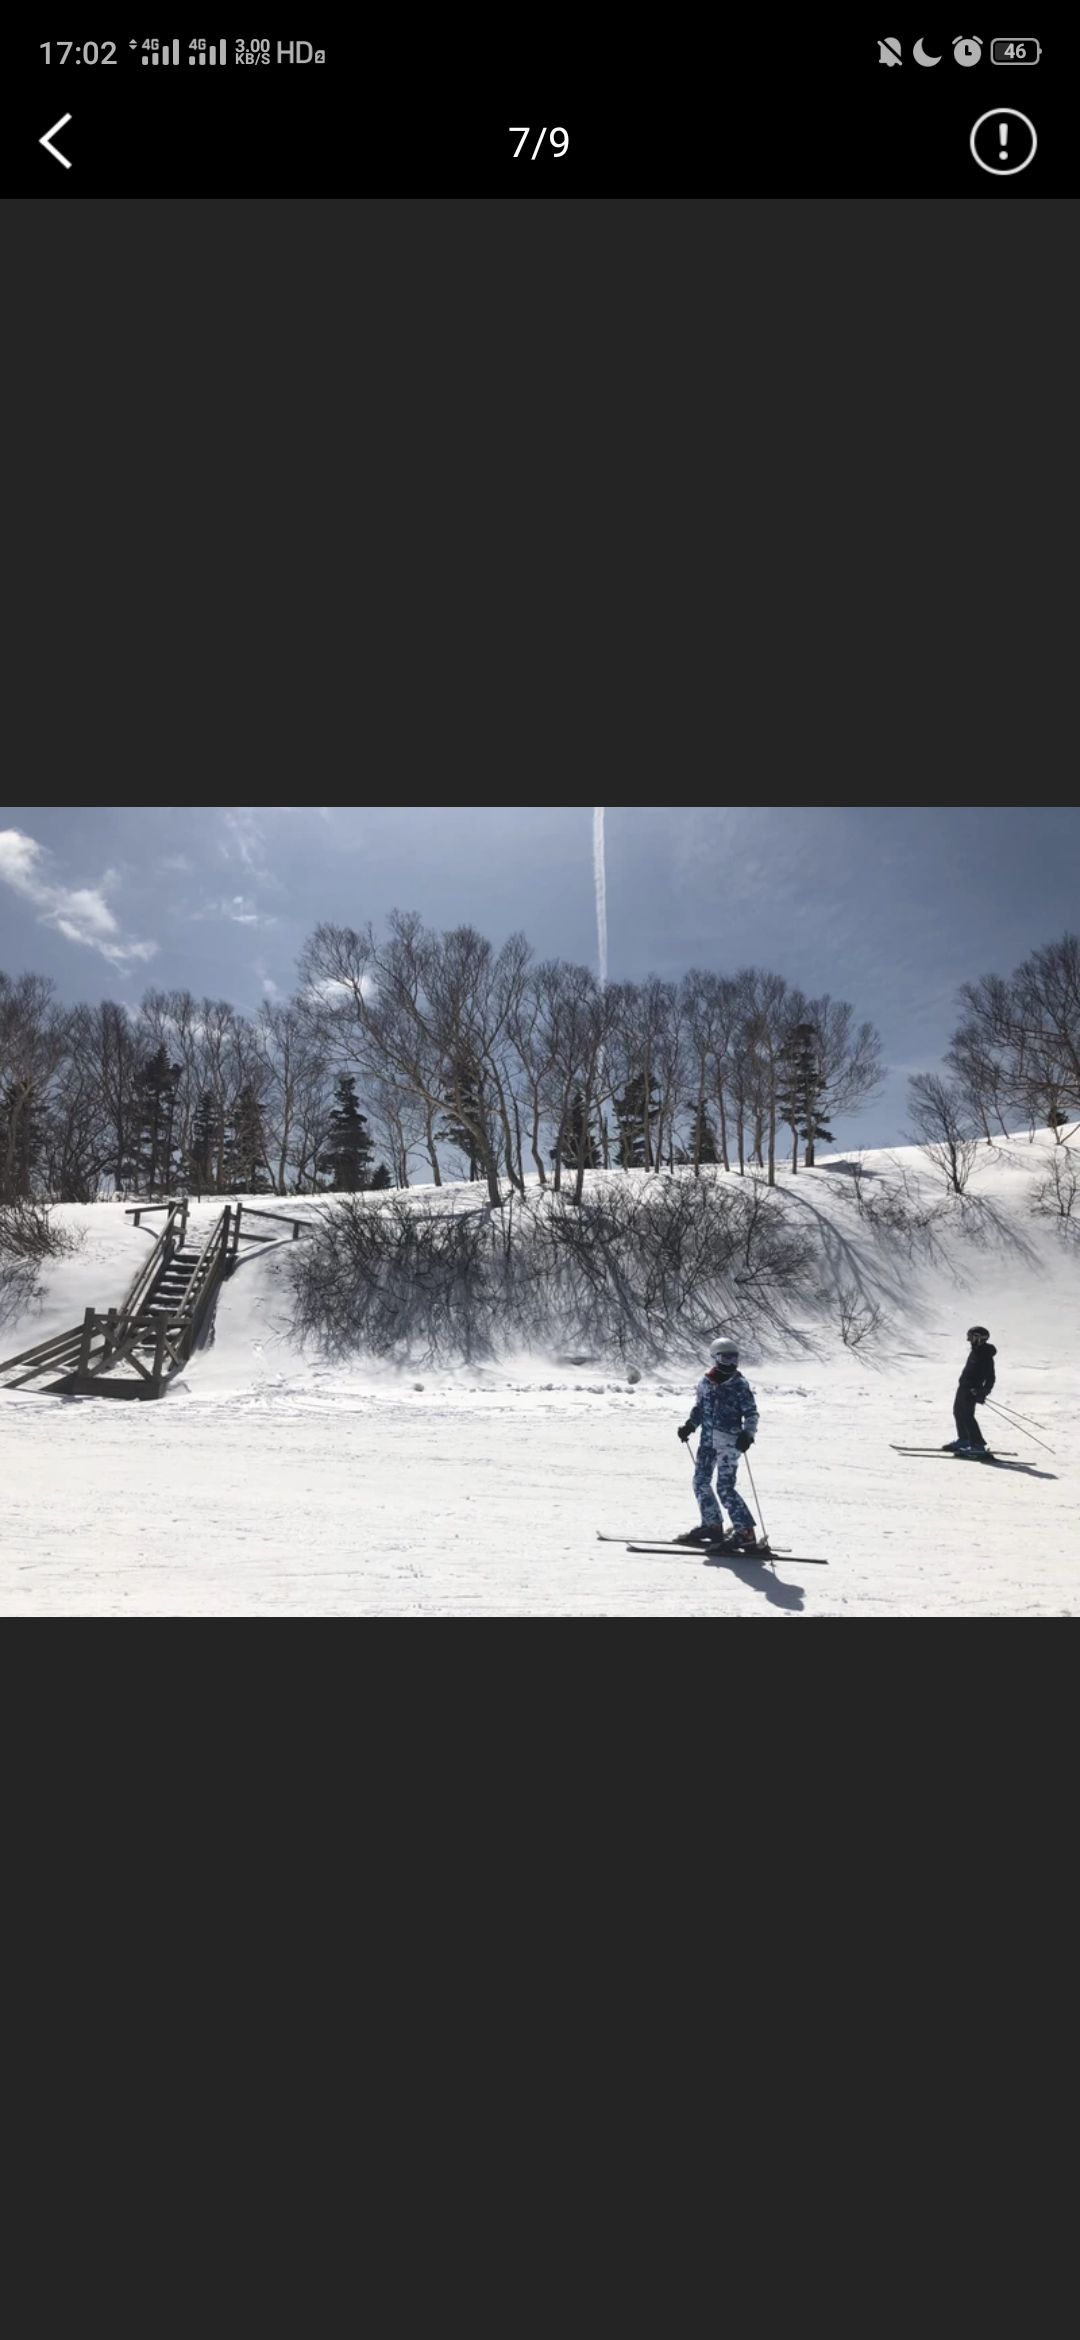 金安比高原滑雪场2篇) (。八幡平市19篇  Hello安比高原滑雪篇雪:场特点  坐落在北纬40度